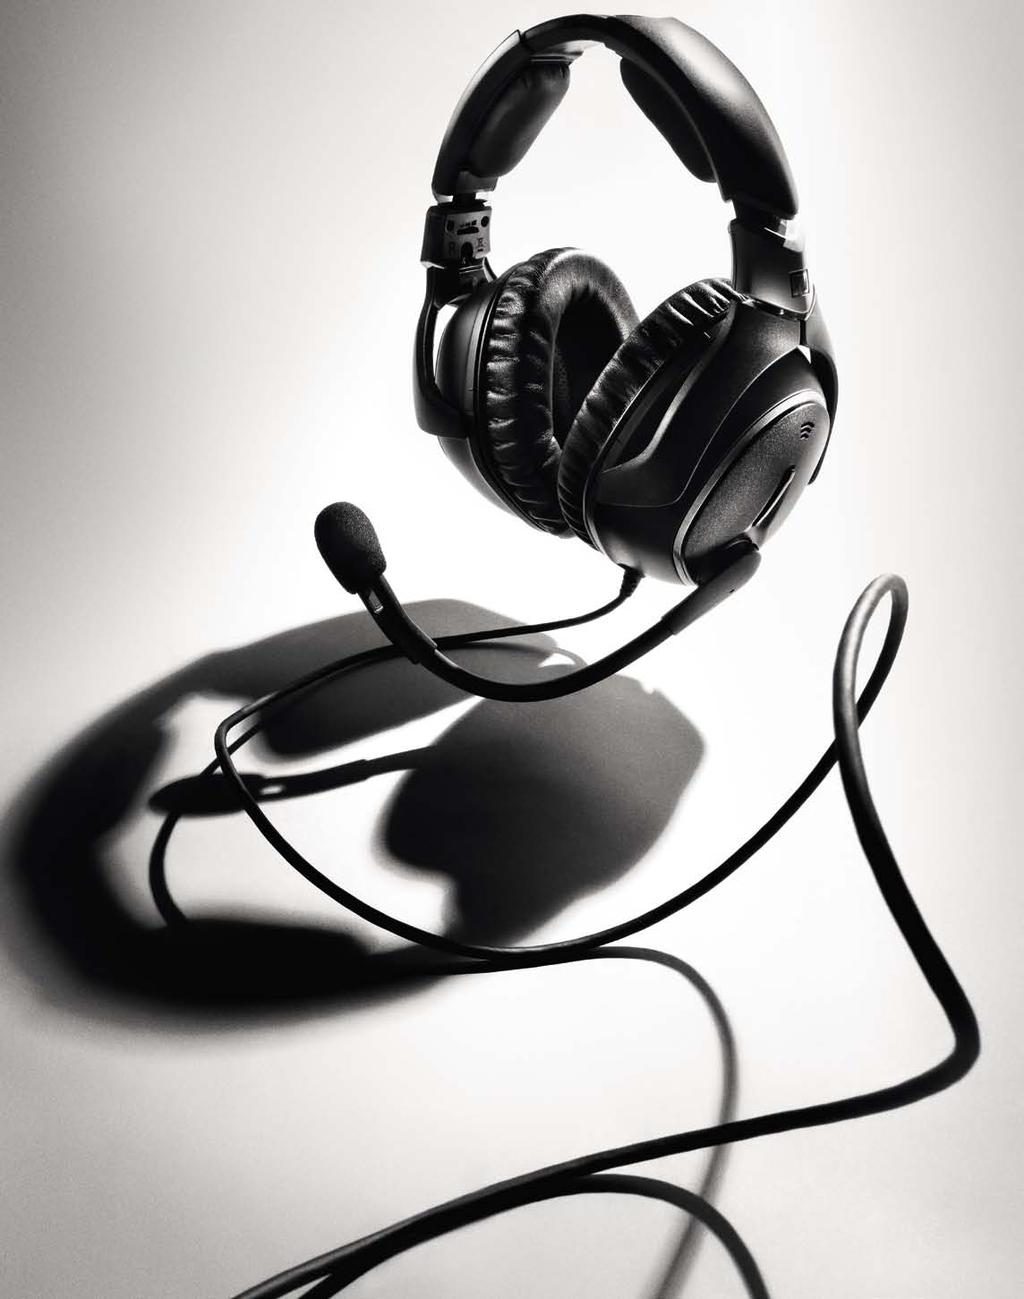 Sennheiser headphones In 2010, developed headphones for manufacturer Sennheiser